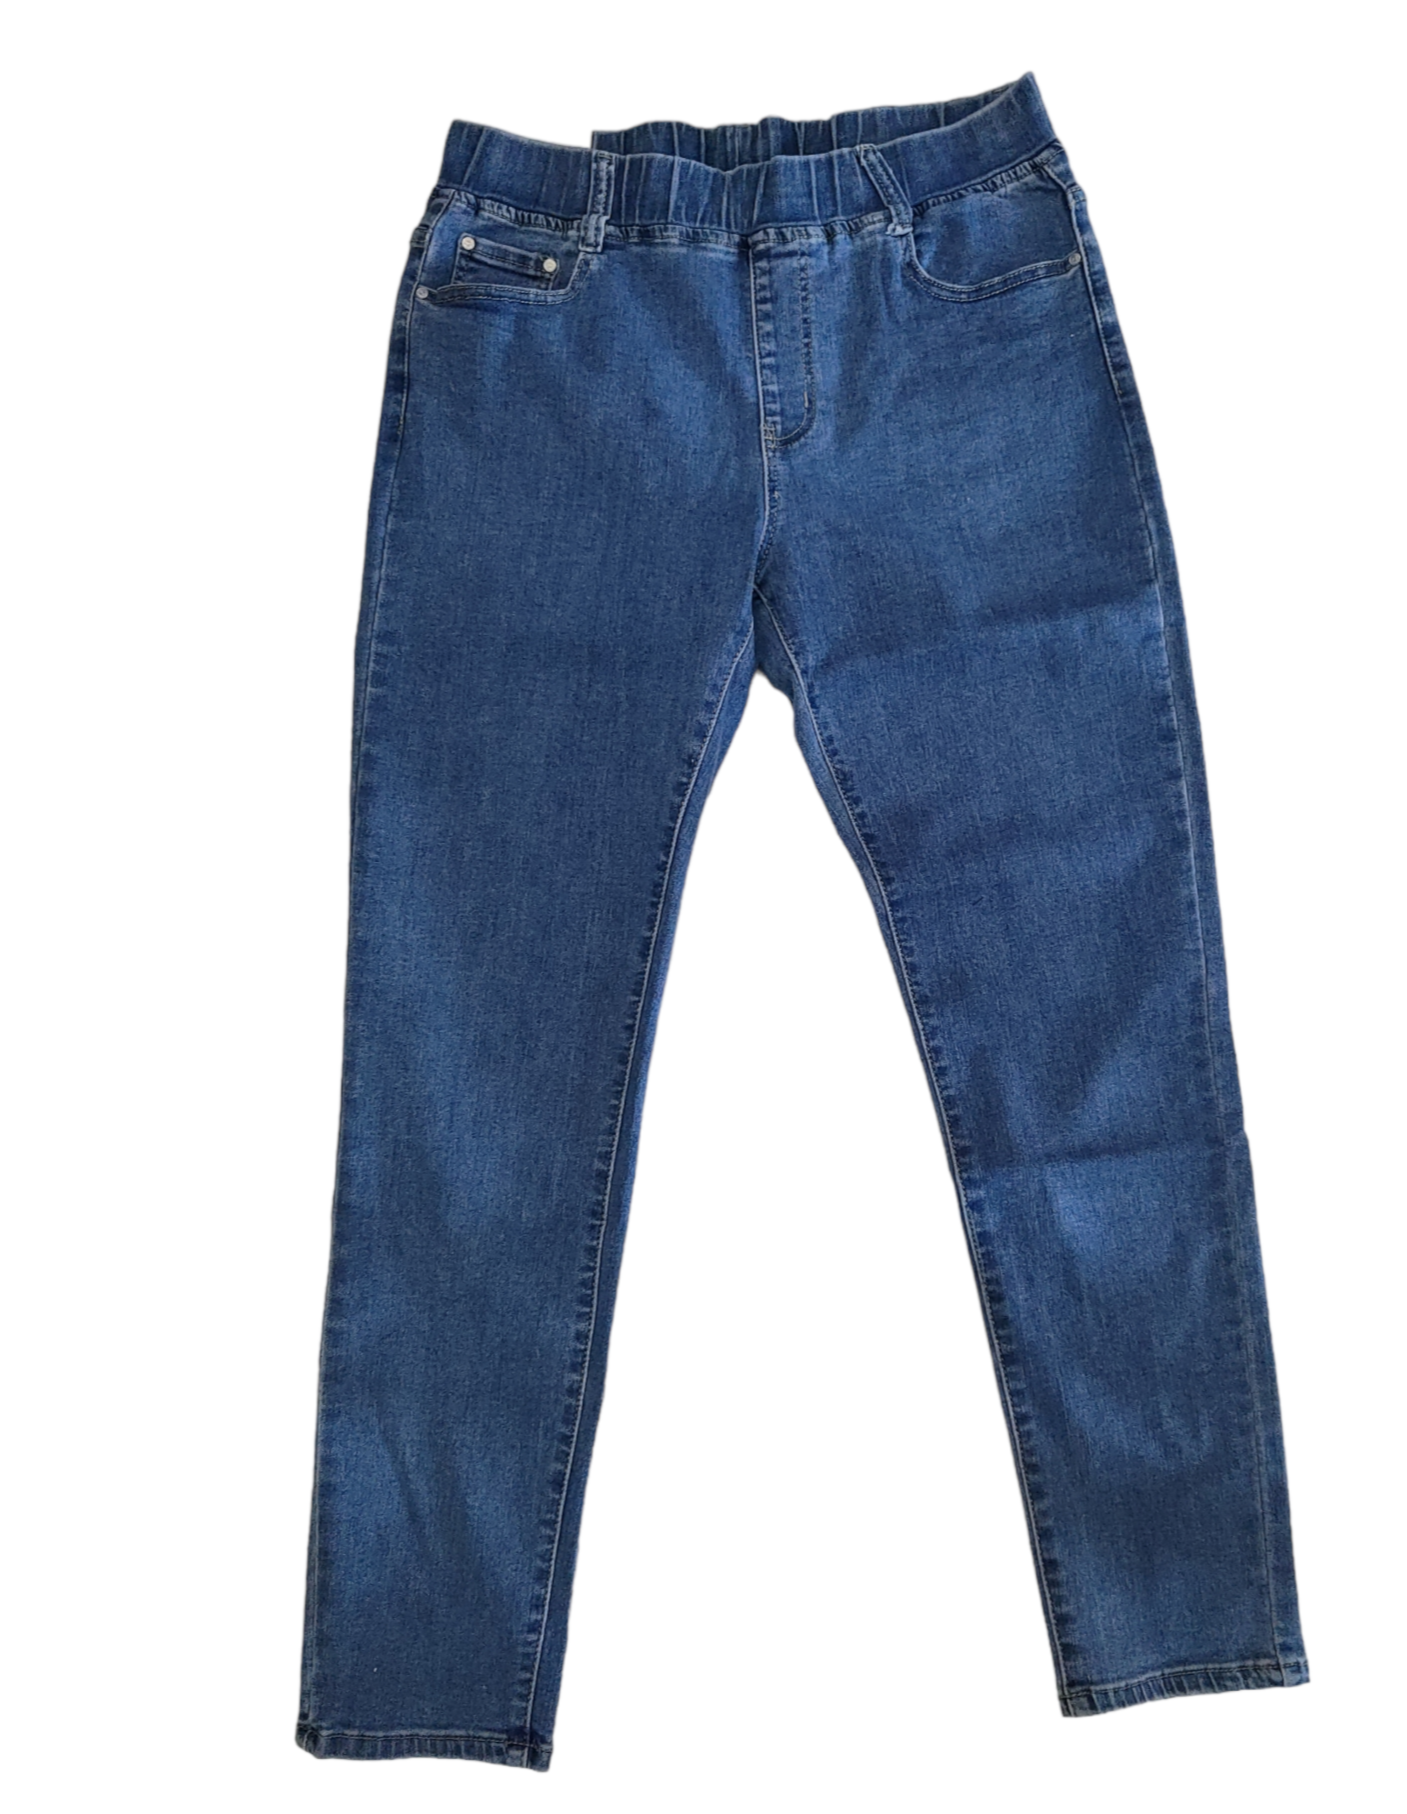 Jeans Donna Modello Elasticizzato Cinque Tasche e con Elastico in Vita